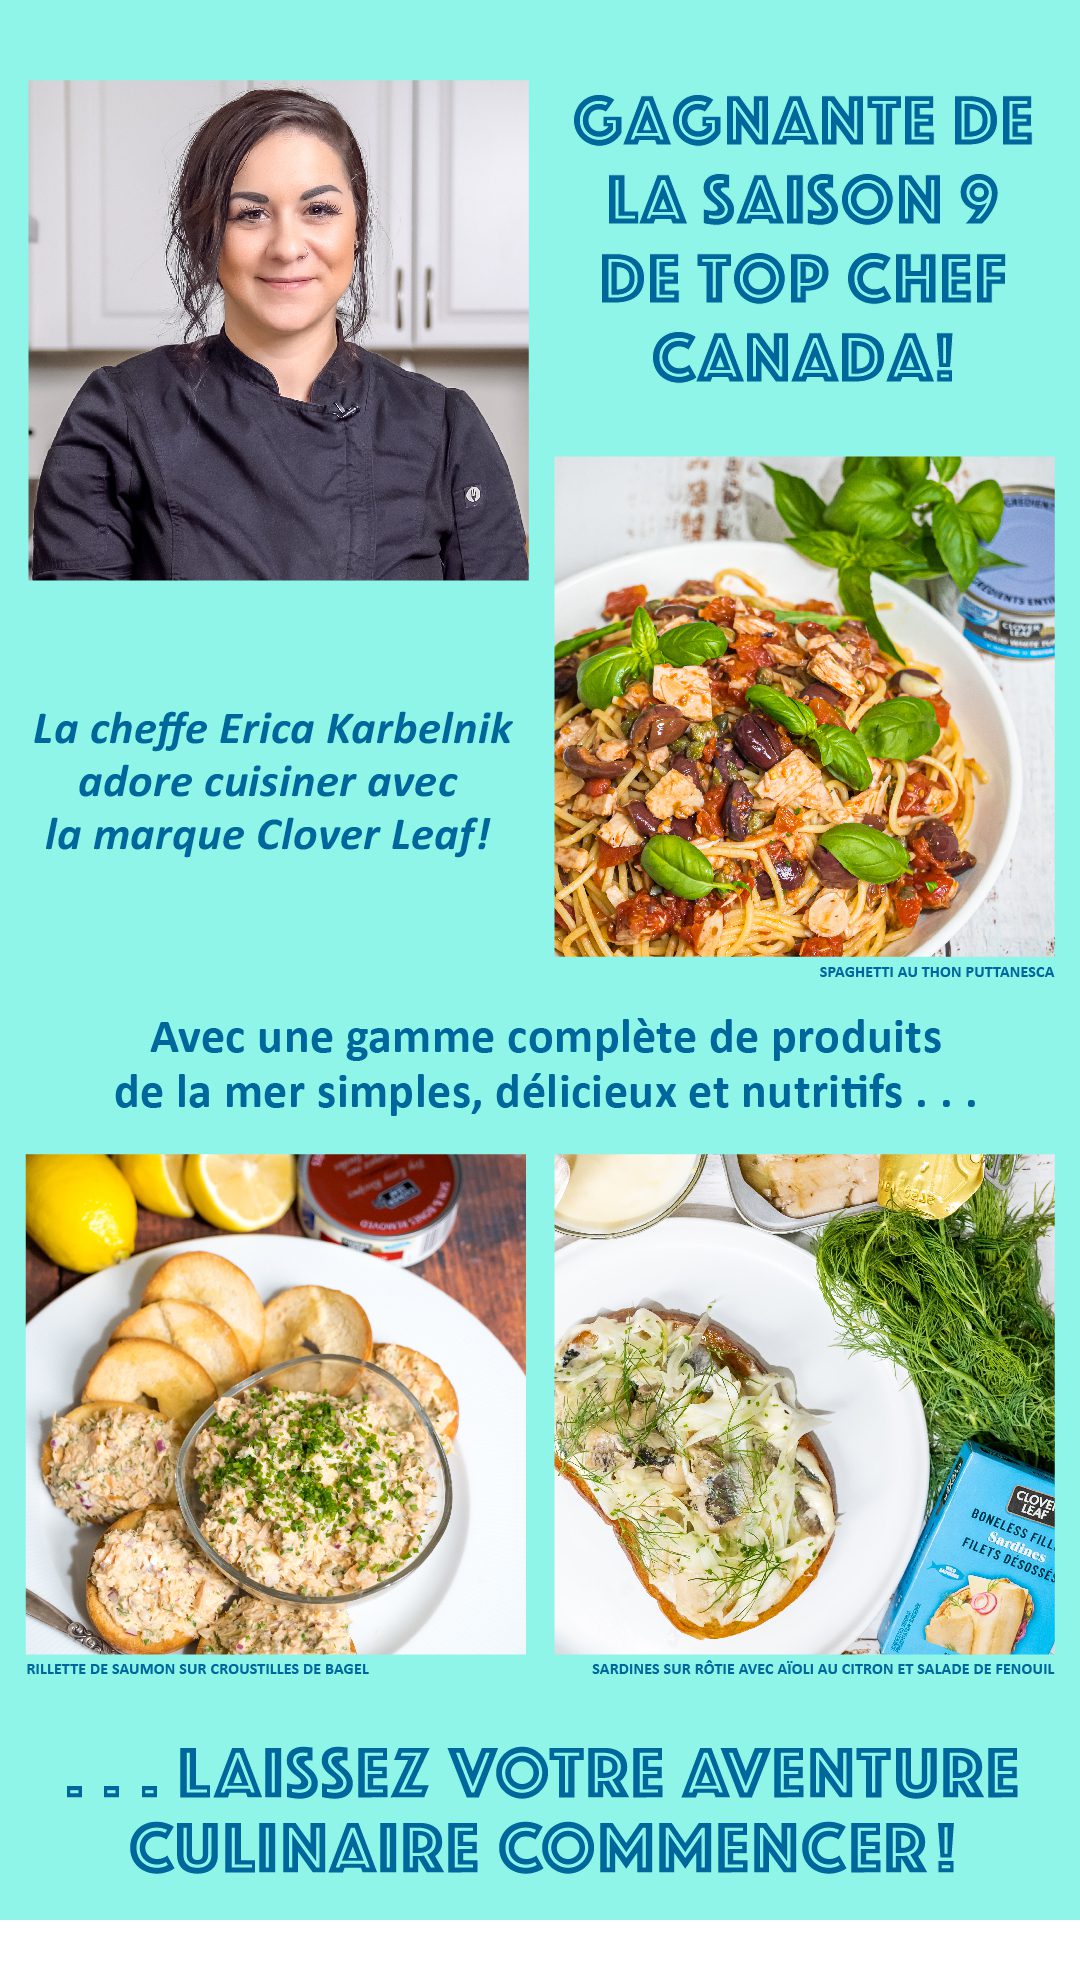 GAGNANTE DE LA SAISON 9 DE TOP CHEF CANADA! La cheffe Erica Karbelnik adore cuisiner avec la marque Clover Leaf! Avec une gamme complète de produits de la mer simples, délicieux et nutritifs, LAISSEZ VOTRE AVENTURE CULINAIRE COMMENCER!